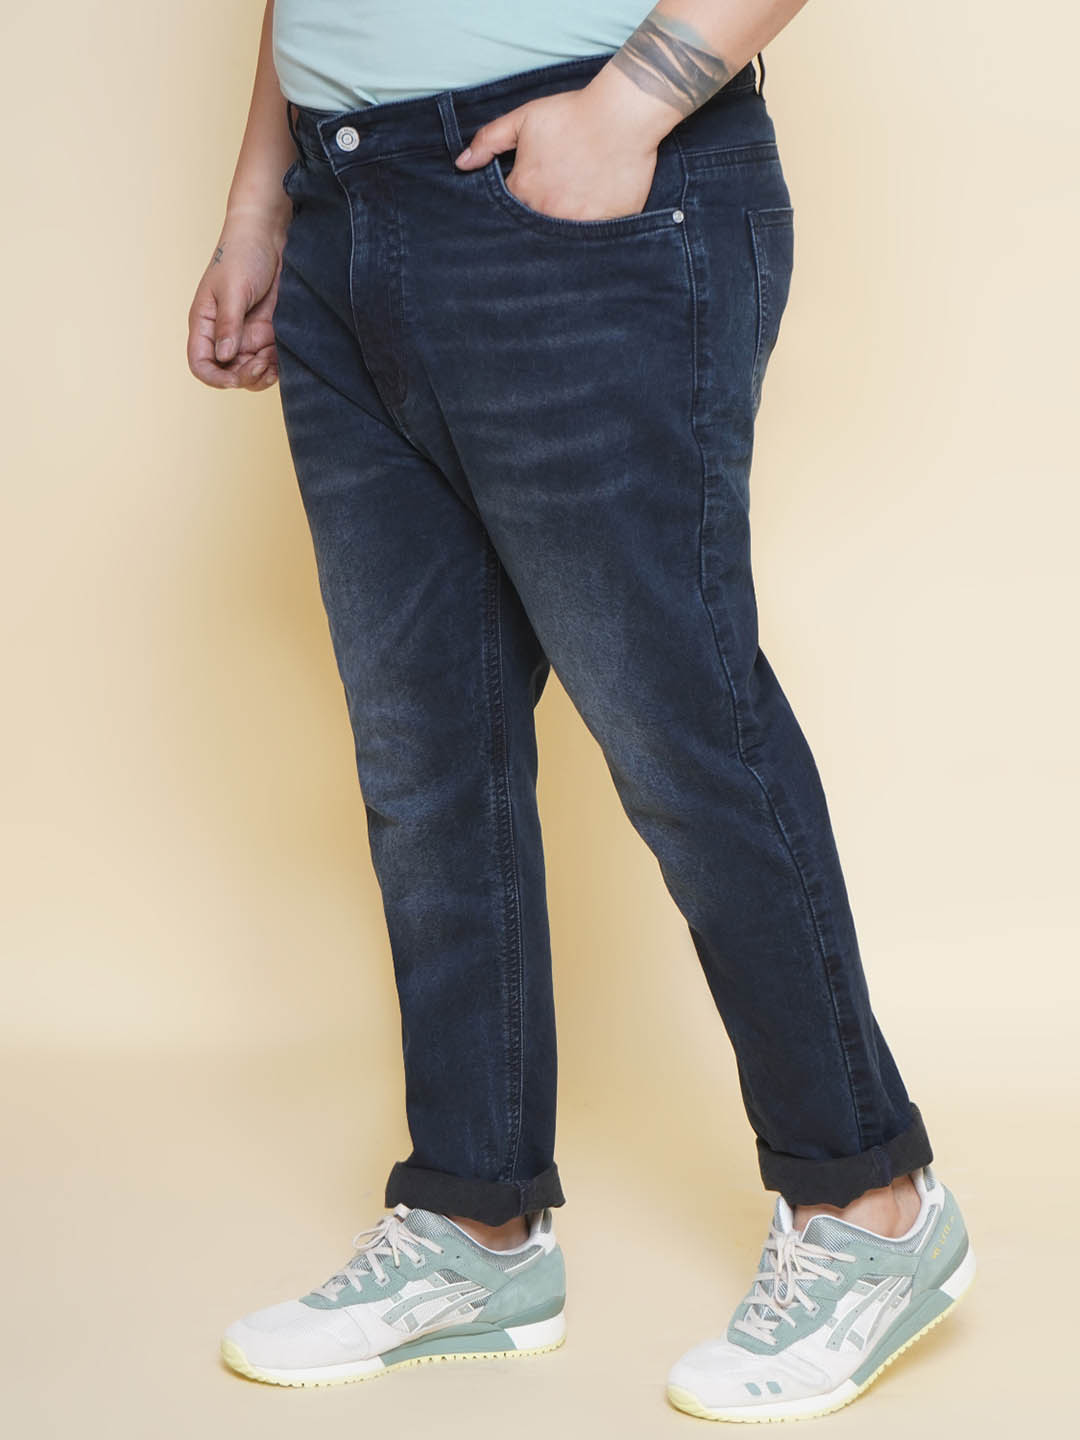 bottomwear/jeans/PJPJ6093/pjpj6093-4.jpg